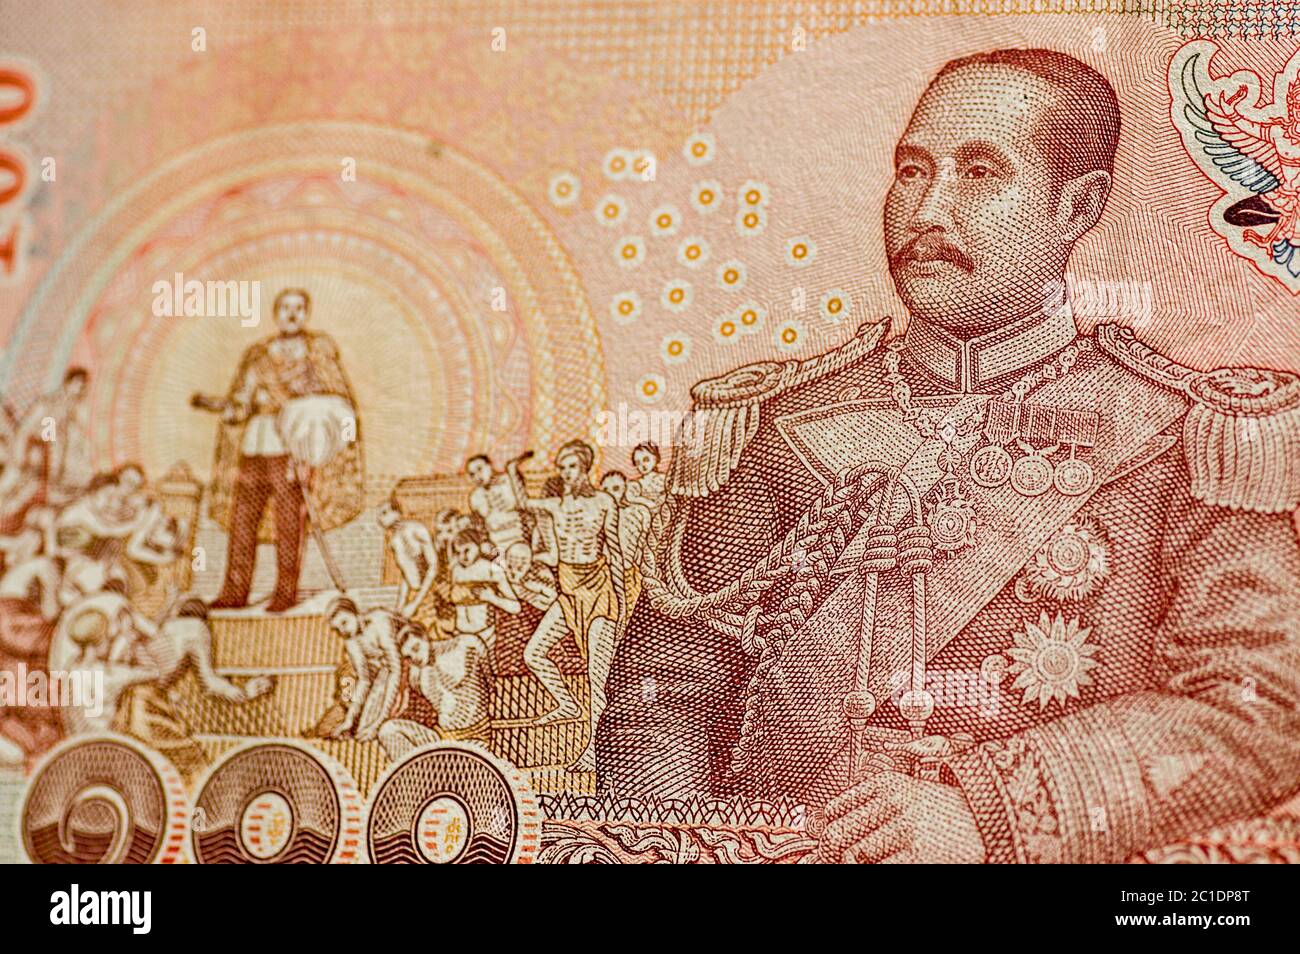 Détail d'un billet de banque de 100 baht de Thaïlande montrant sa Majesté le Roi Chulalongkorn (Rama V) en uniforme de marine et aussi dans une scène marquant l'abolition Banque D'Images